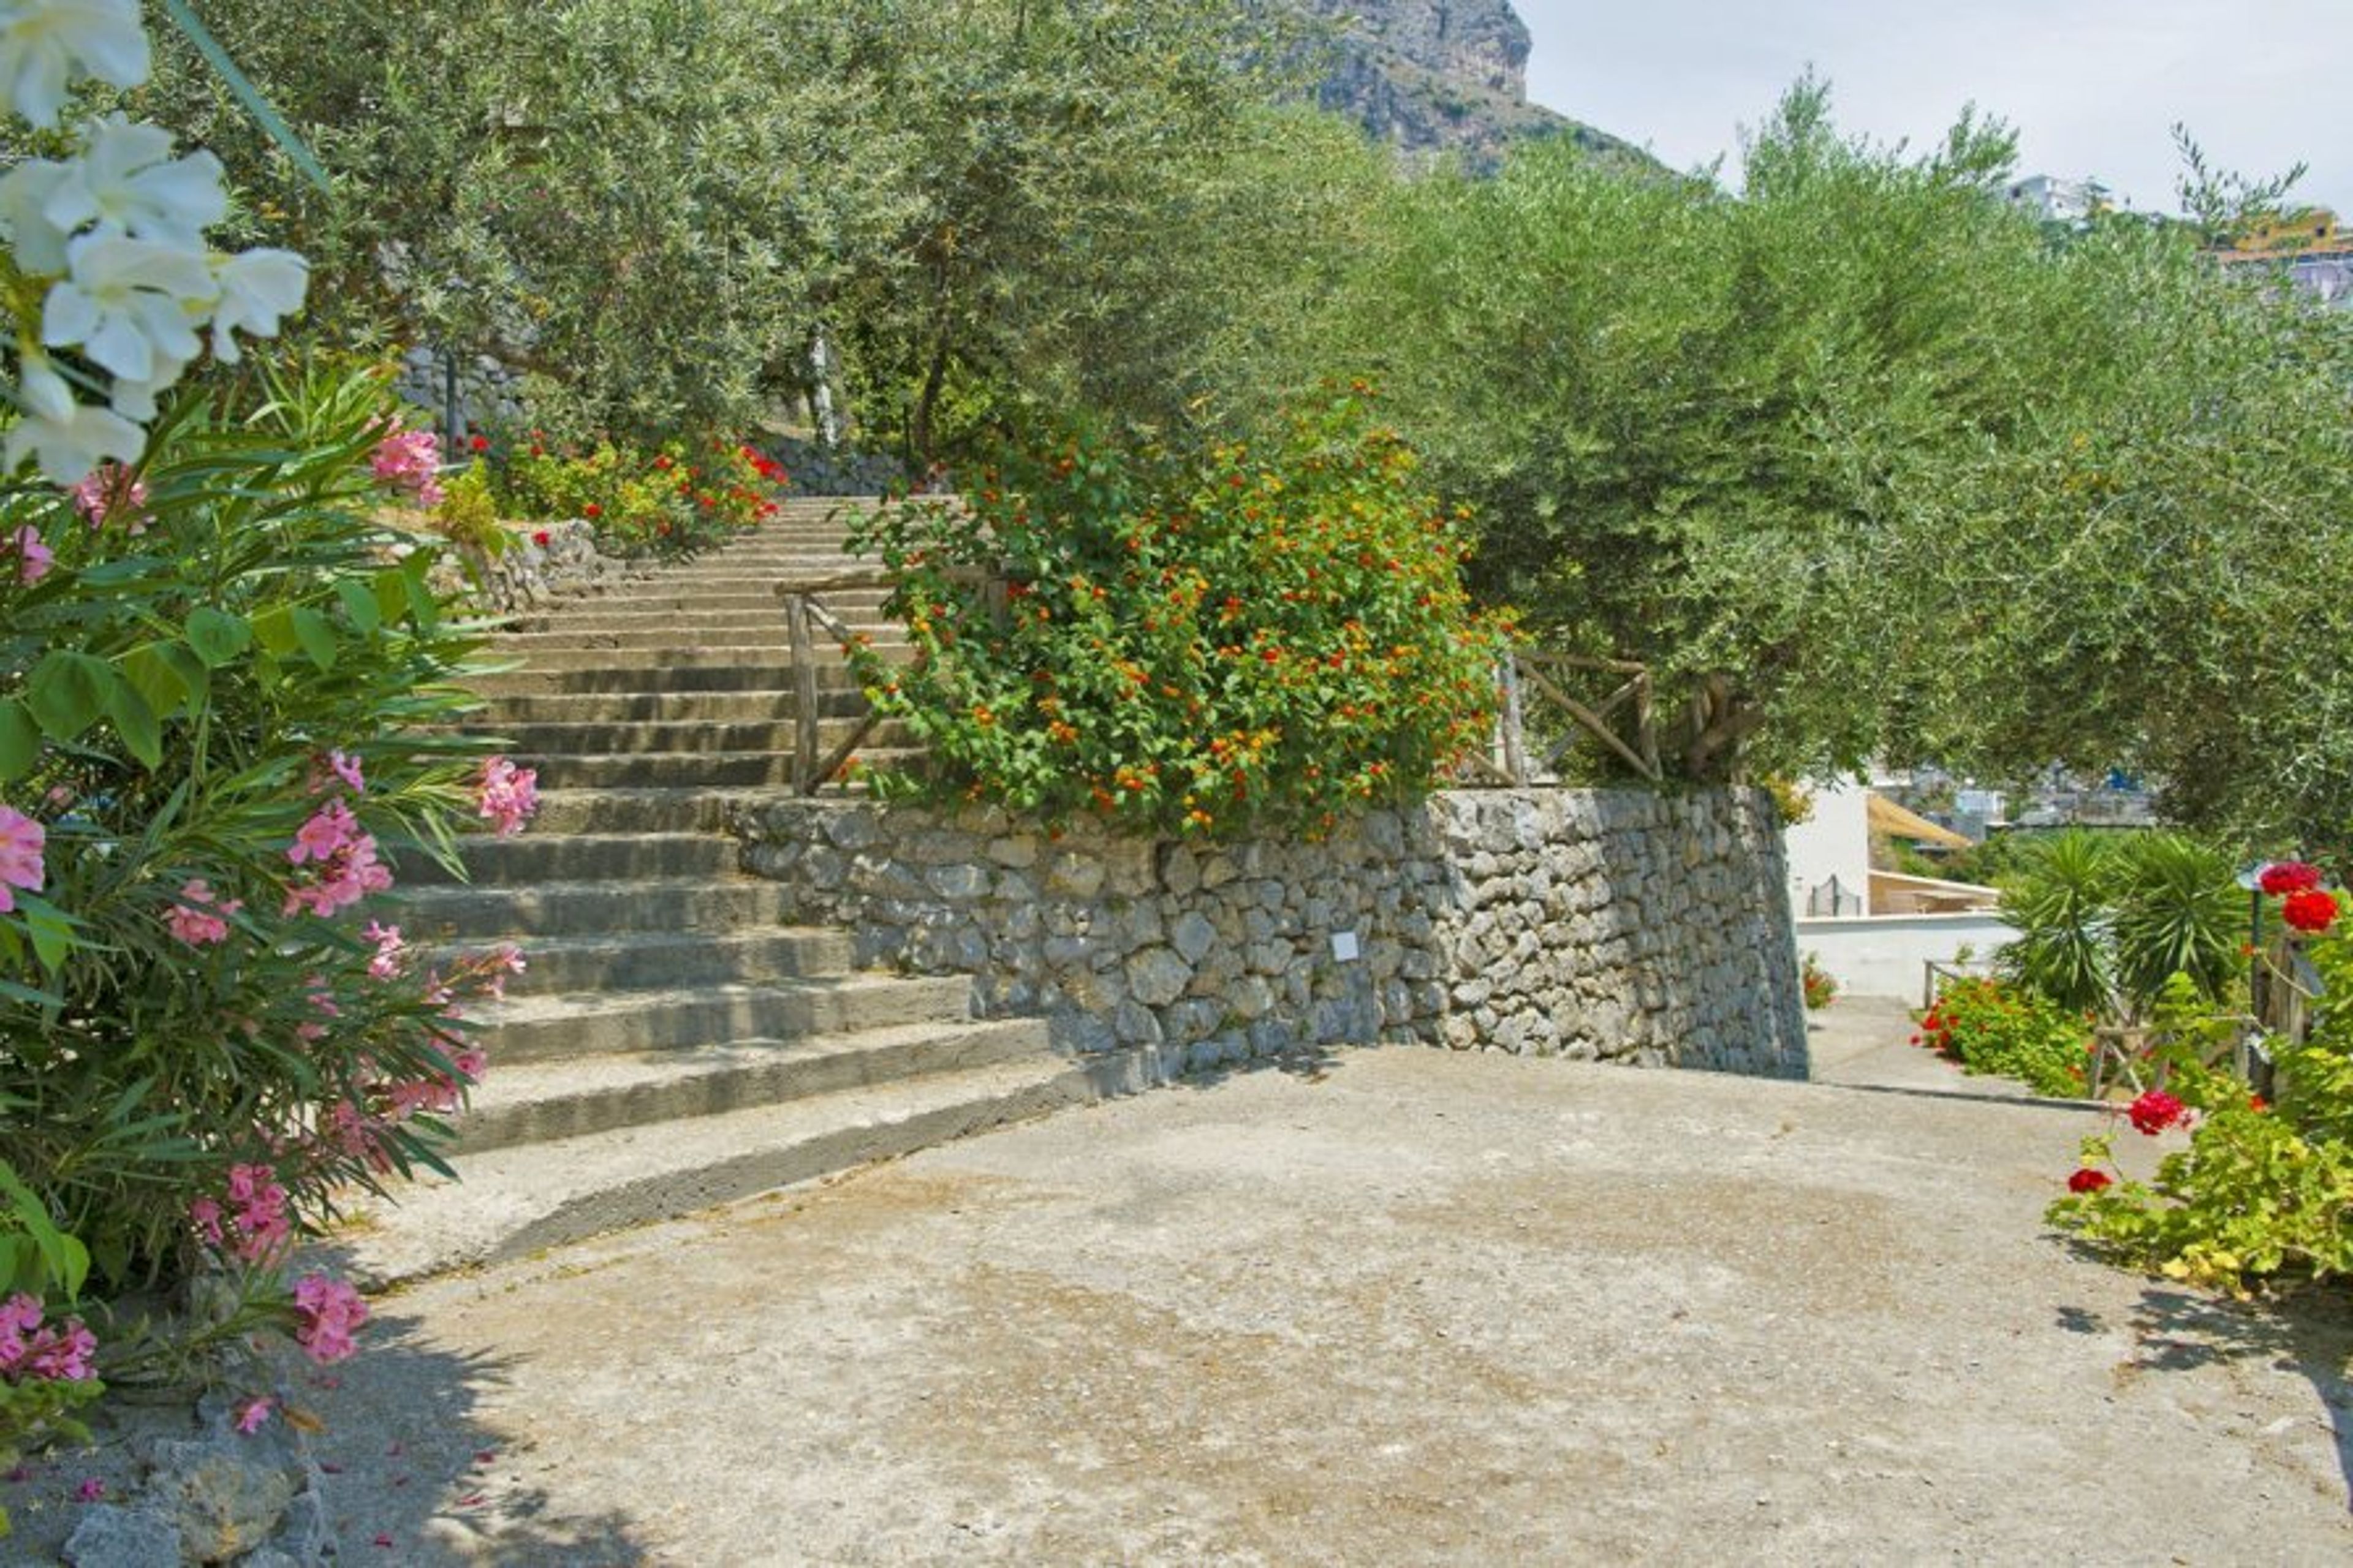 Il Mare (03) Access path along the garden